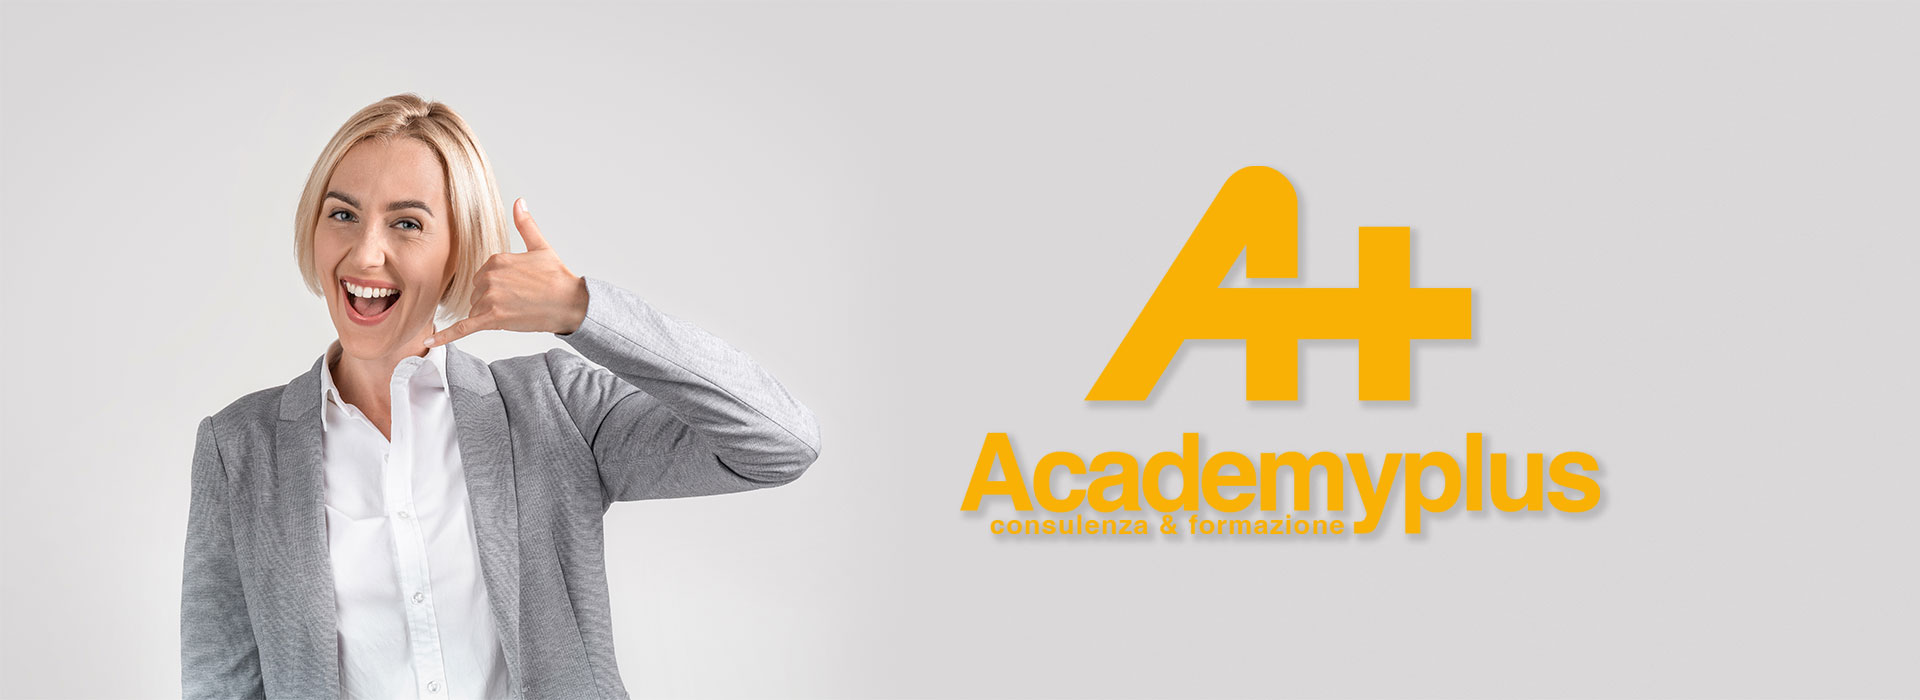 Academy-Plus - Contatti Banner